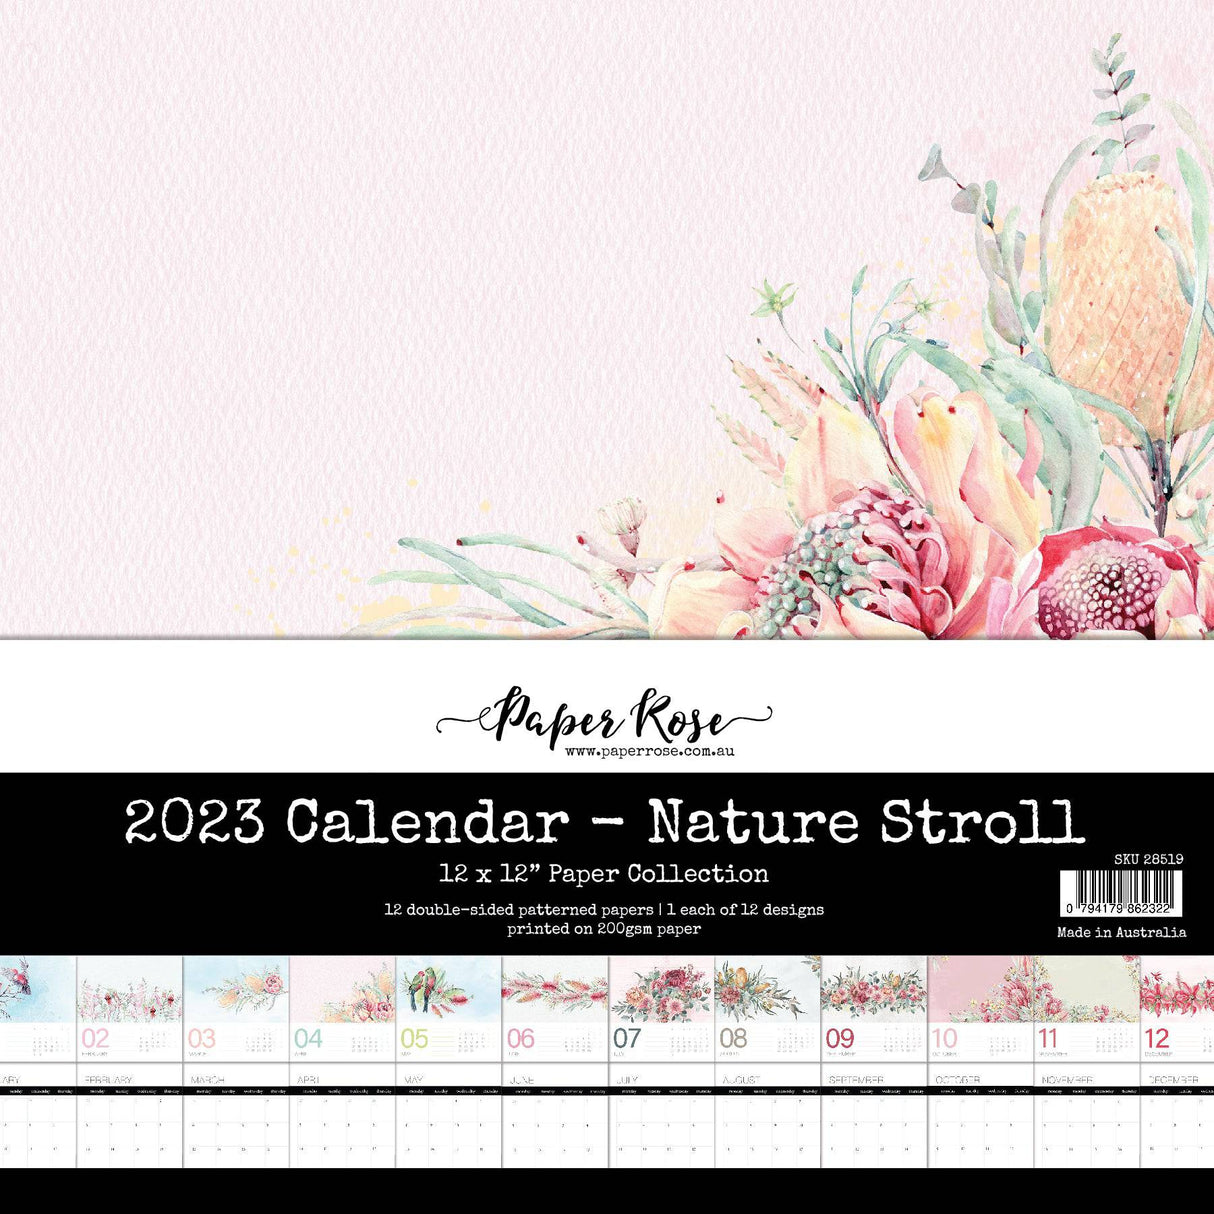 Nature Stroll 2023 Calendar 12x12 28519 - Paper Rose Studio